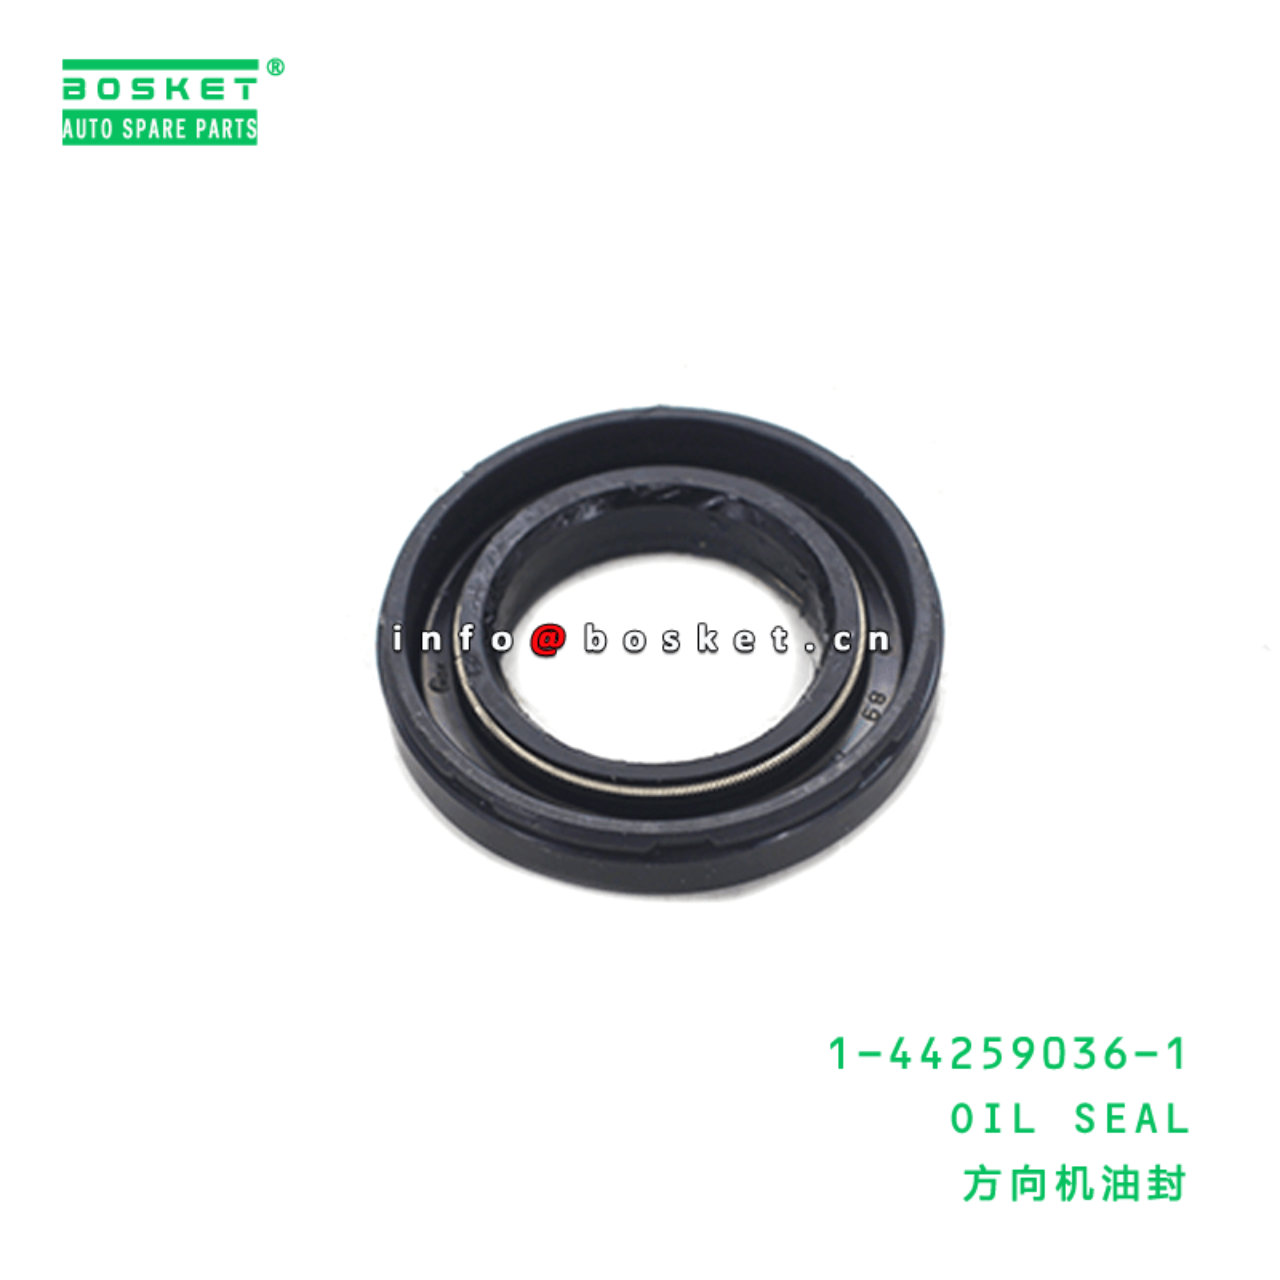 1-44259036-1 Oil Seal 1442590361 Suitable for ISUZU CXZ81 10PE1 